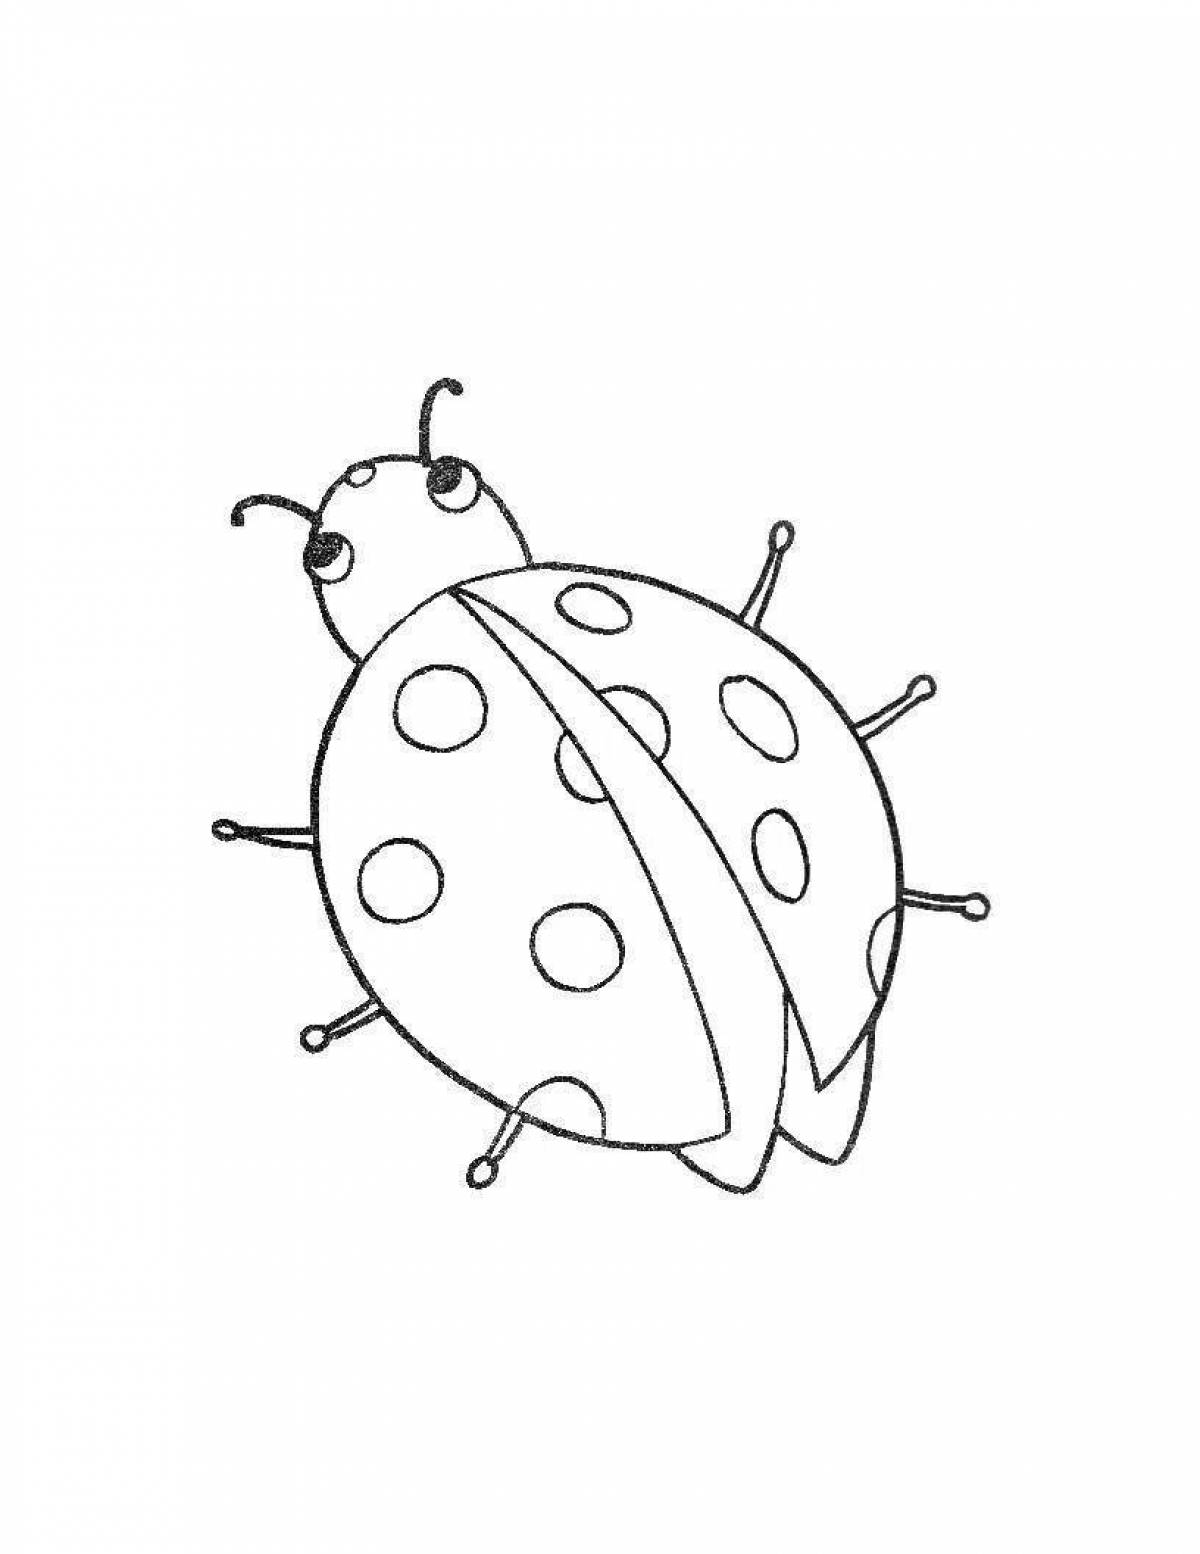 Fun drawing of a ladybug